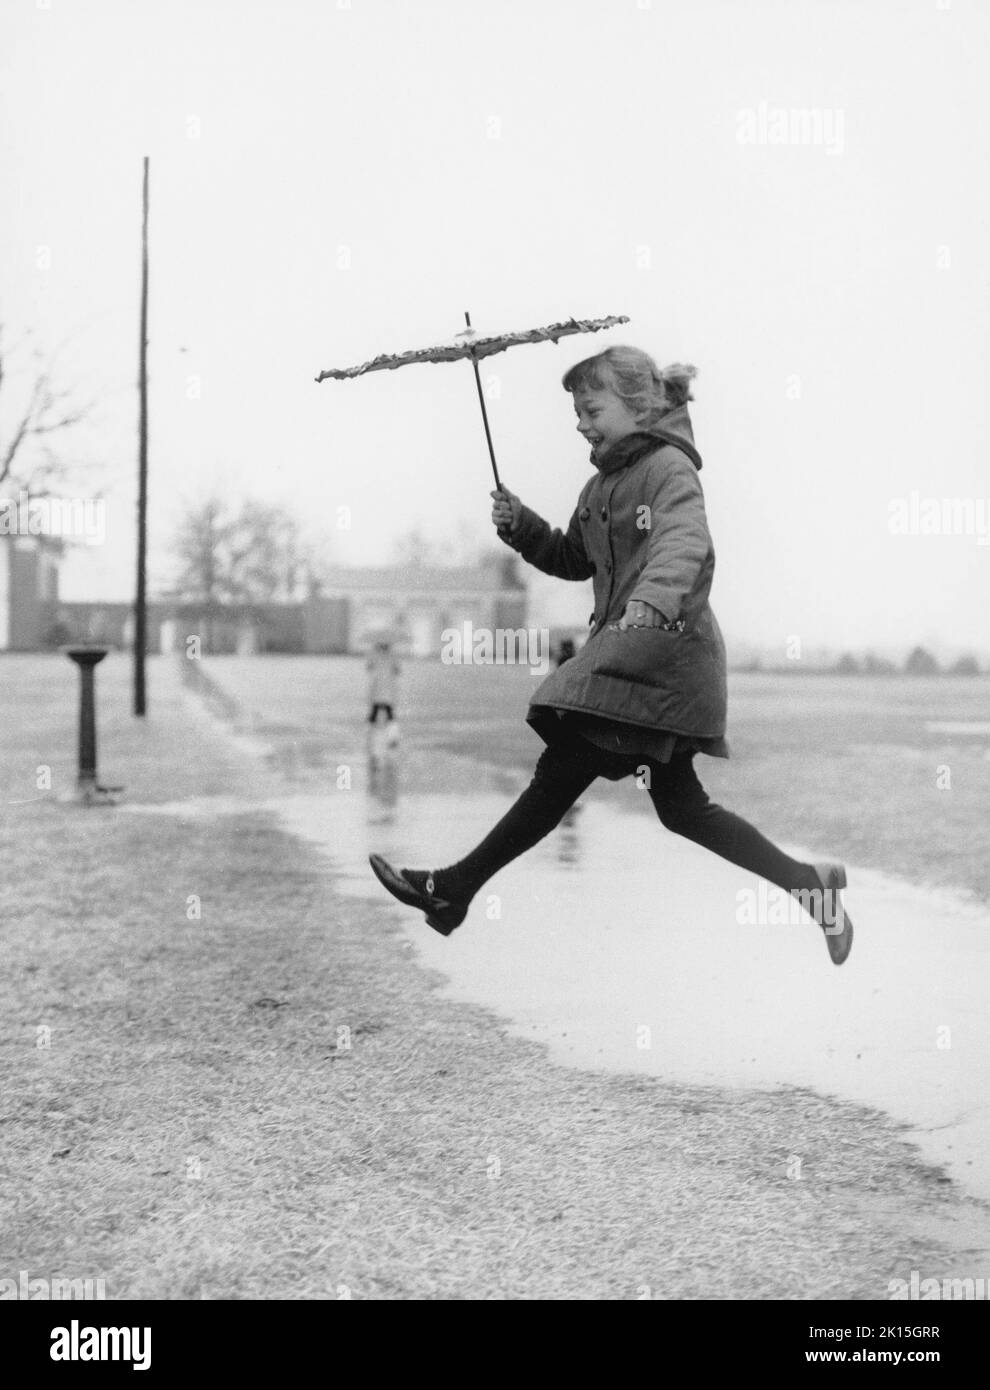 Une jeune fille saute sur une flaque.1960s. Banque D'Images